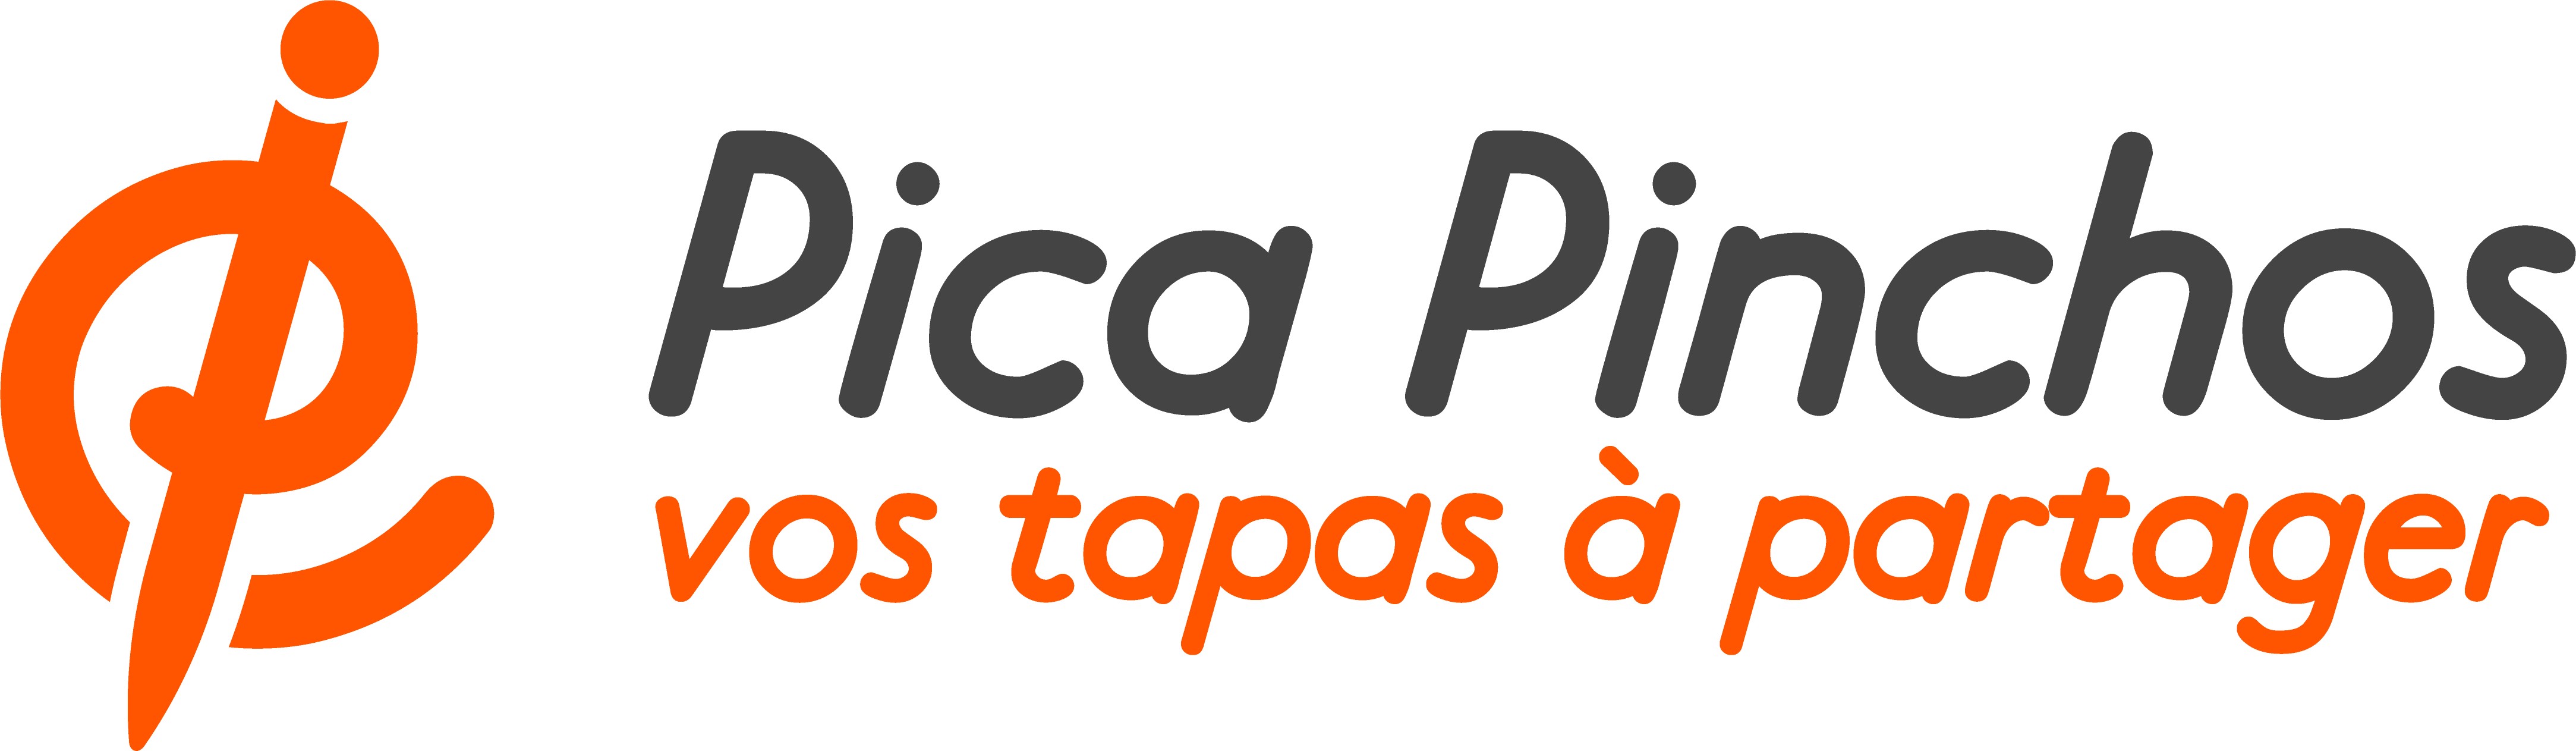 Pica Pinchos